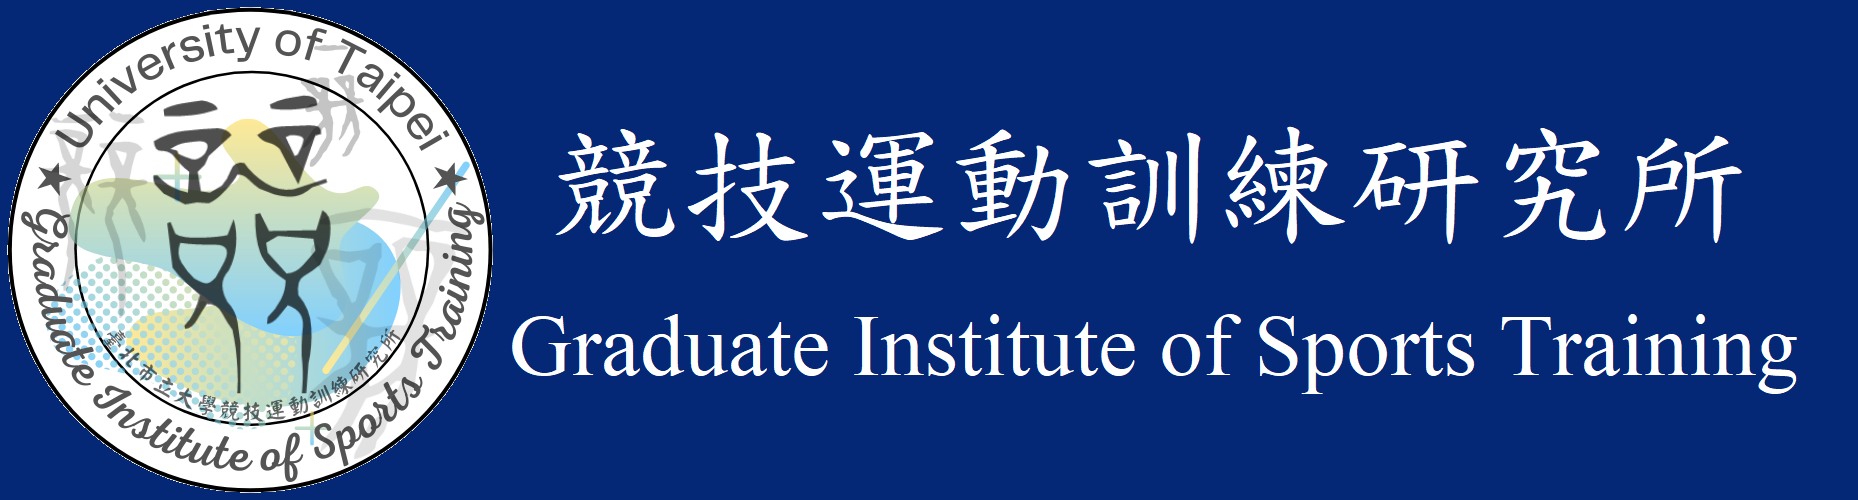 Graduate Institute of Sports Training